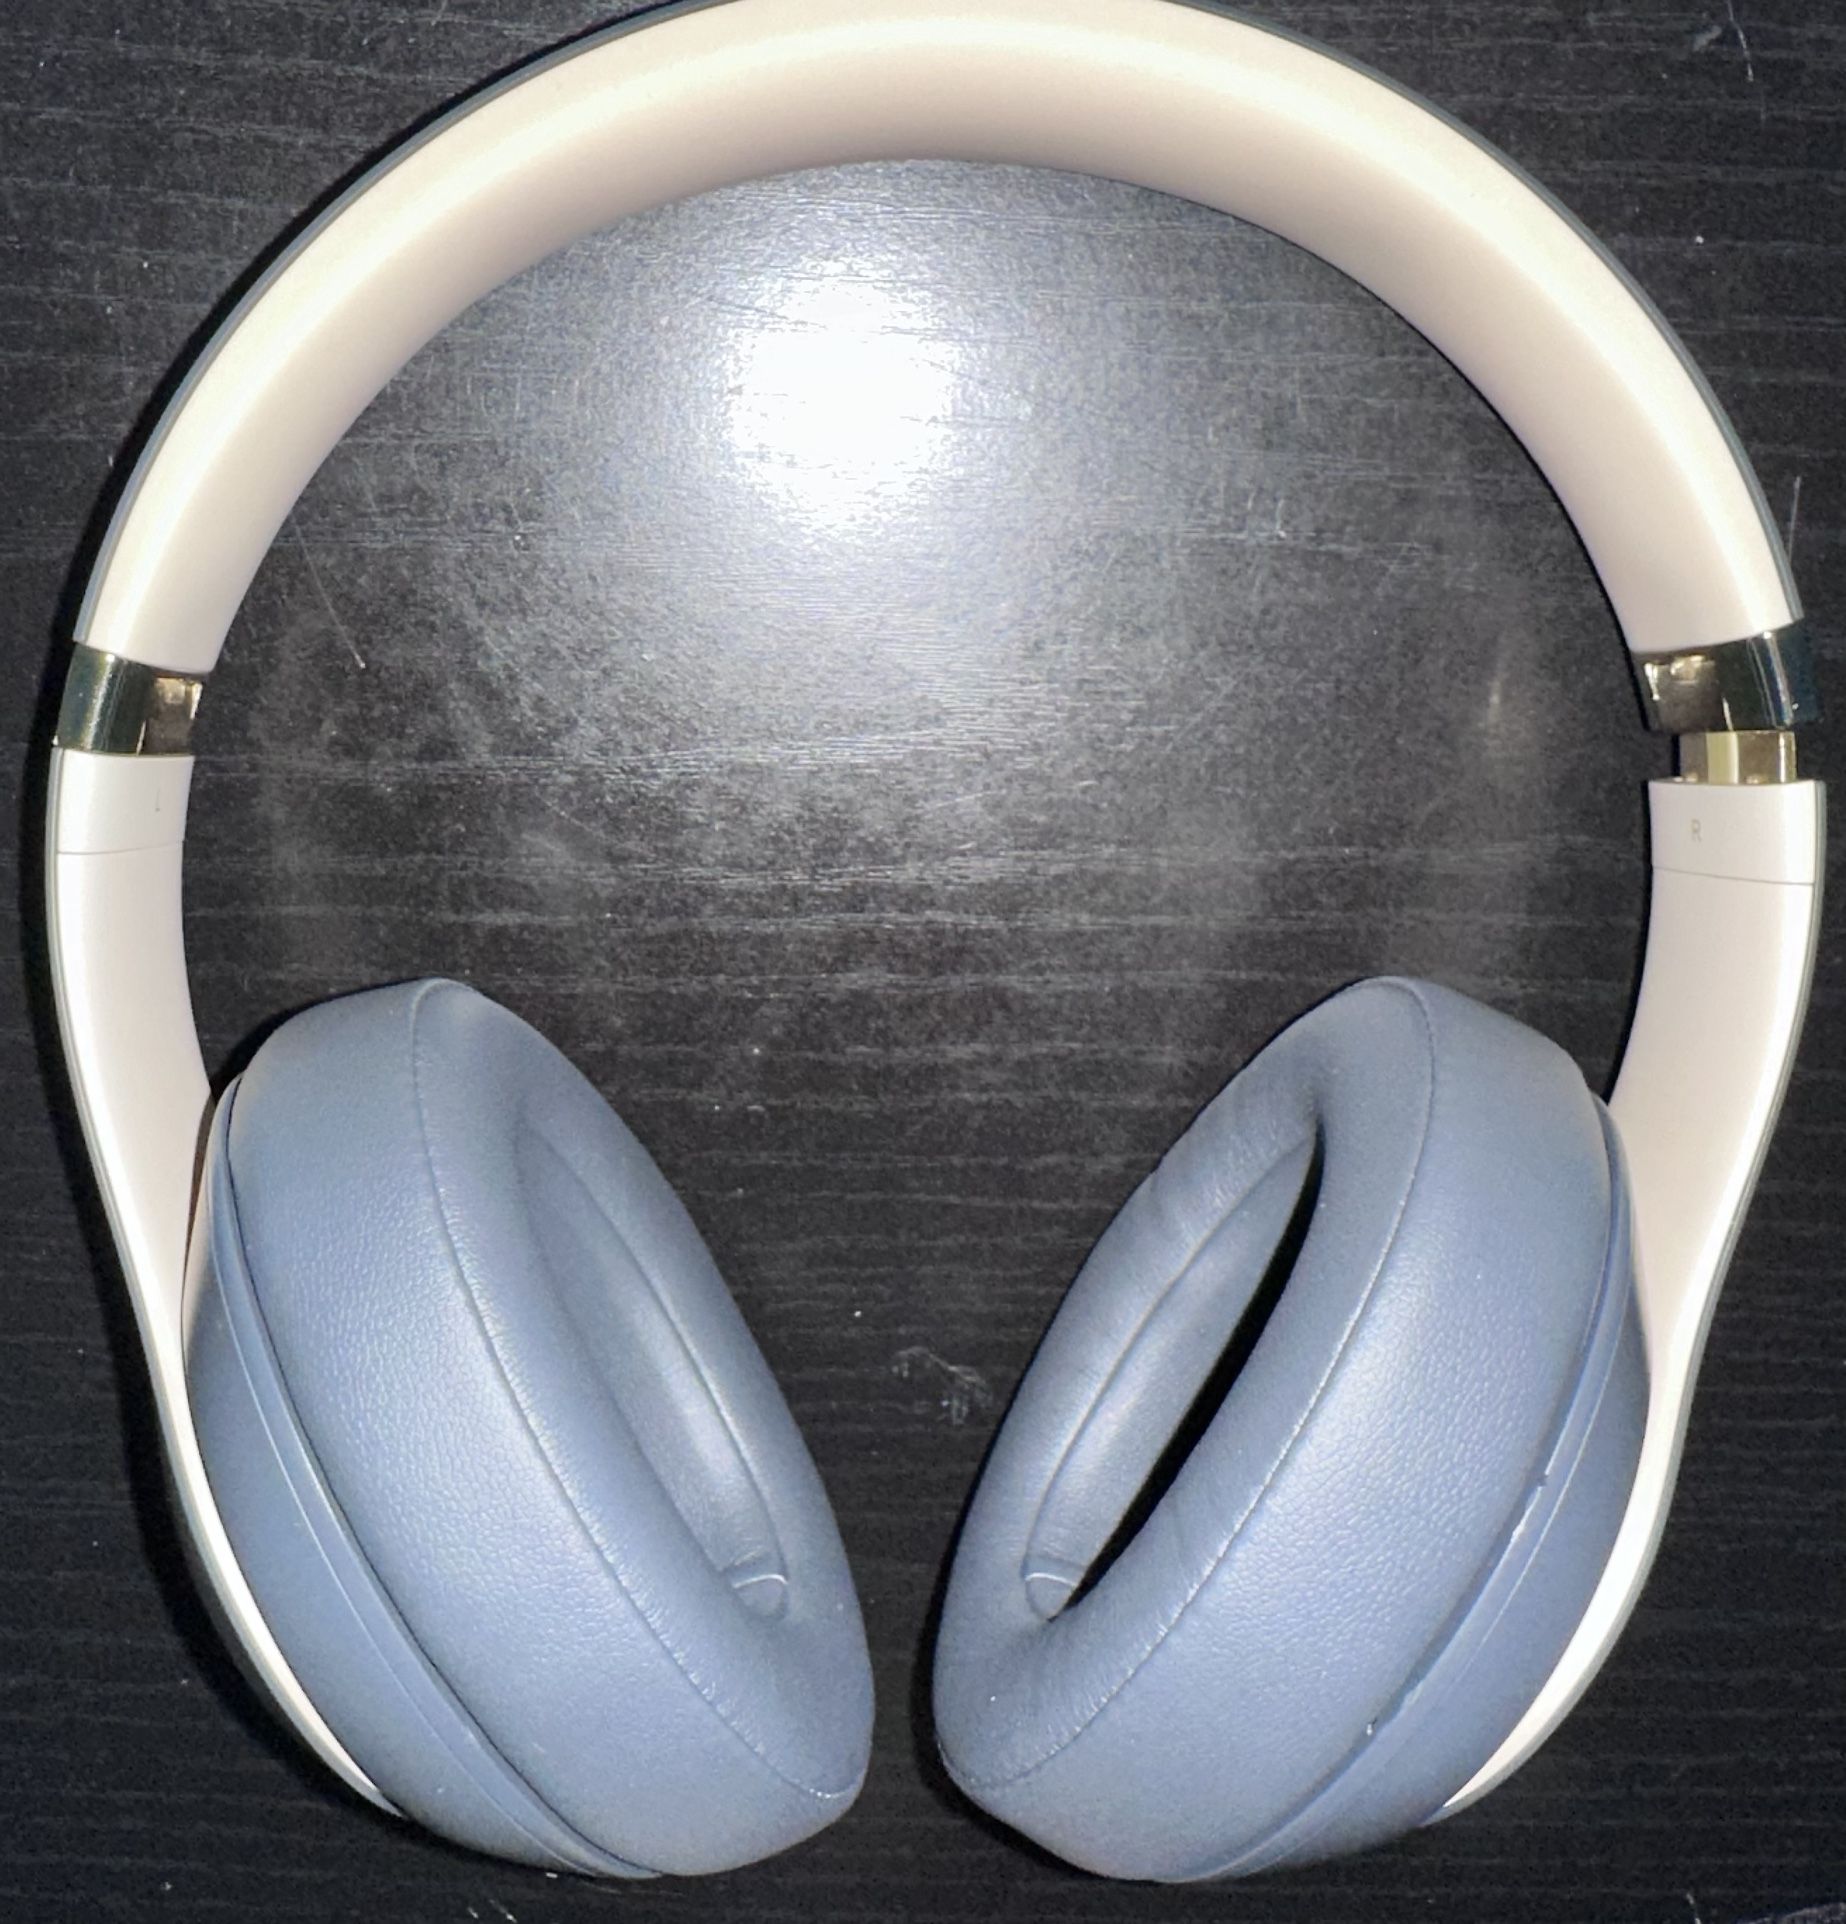 Beats Studio 3 Grey/Gold Headphones